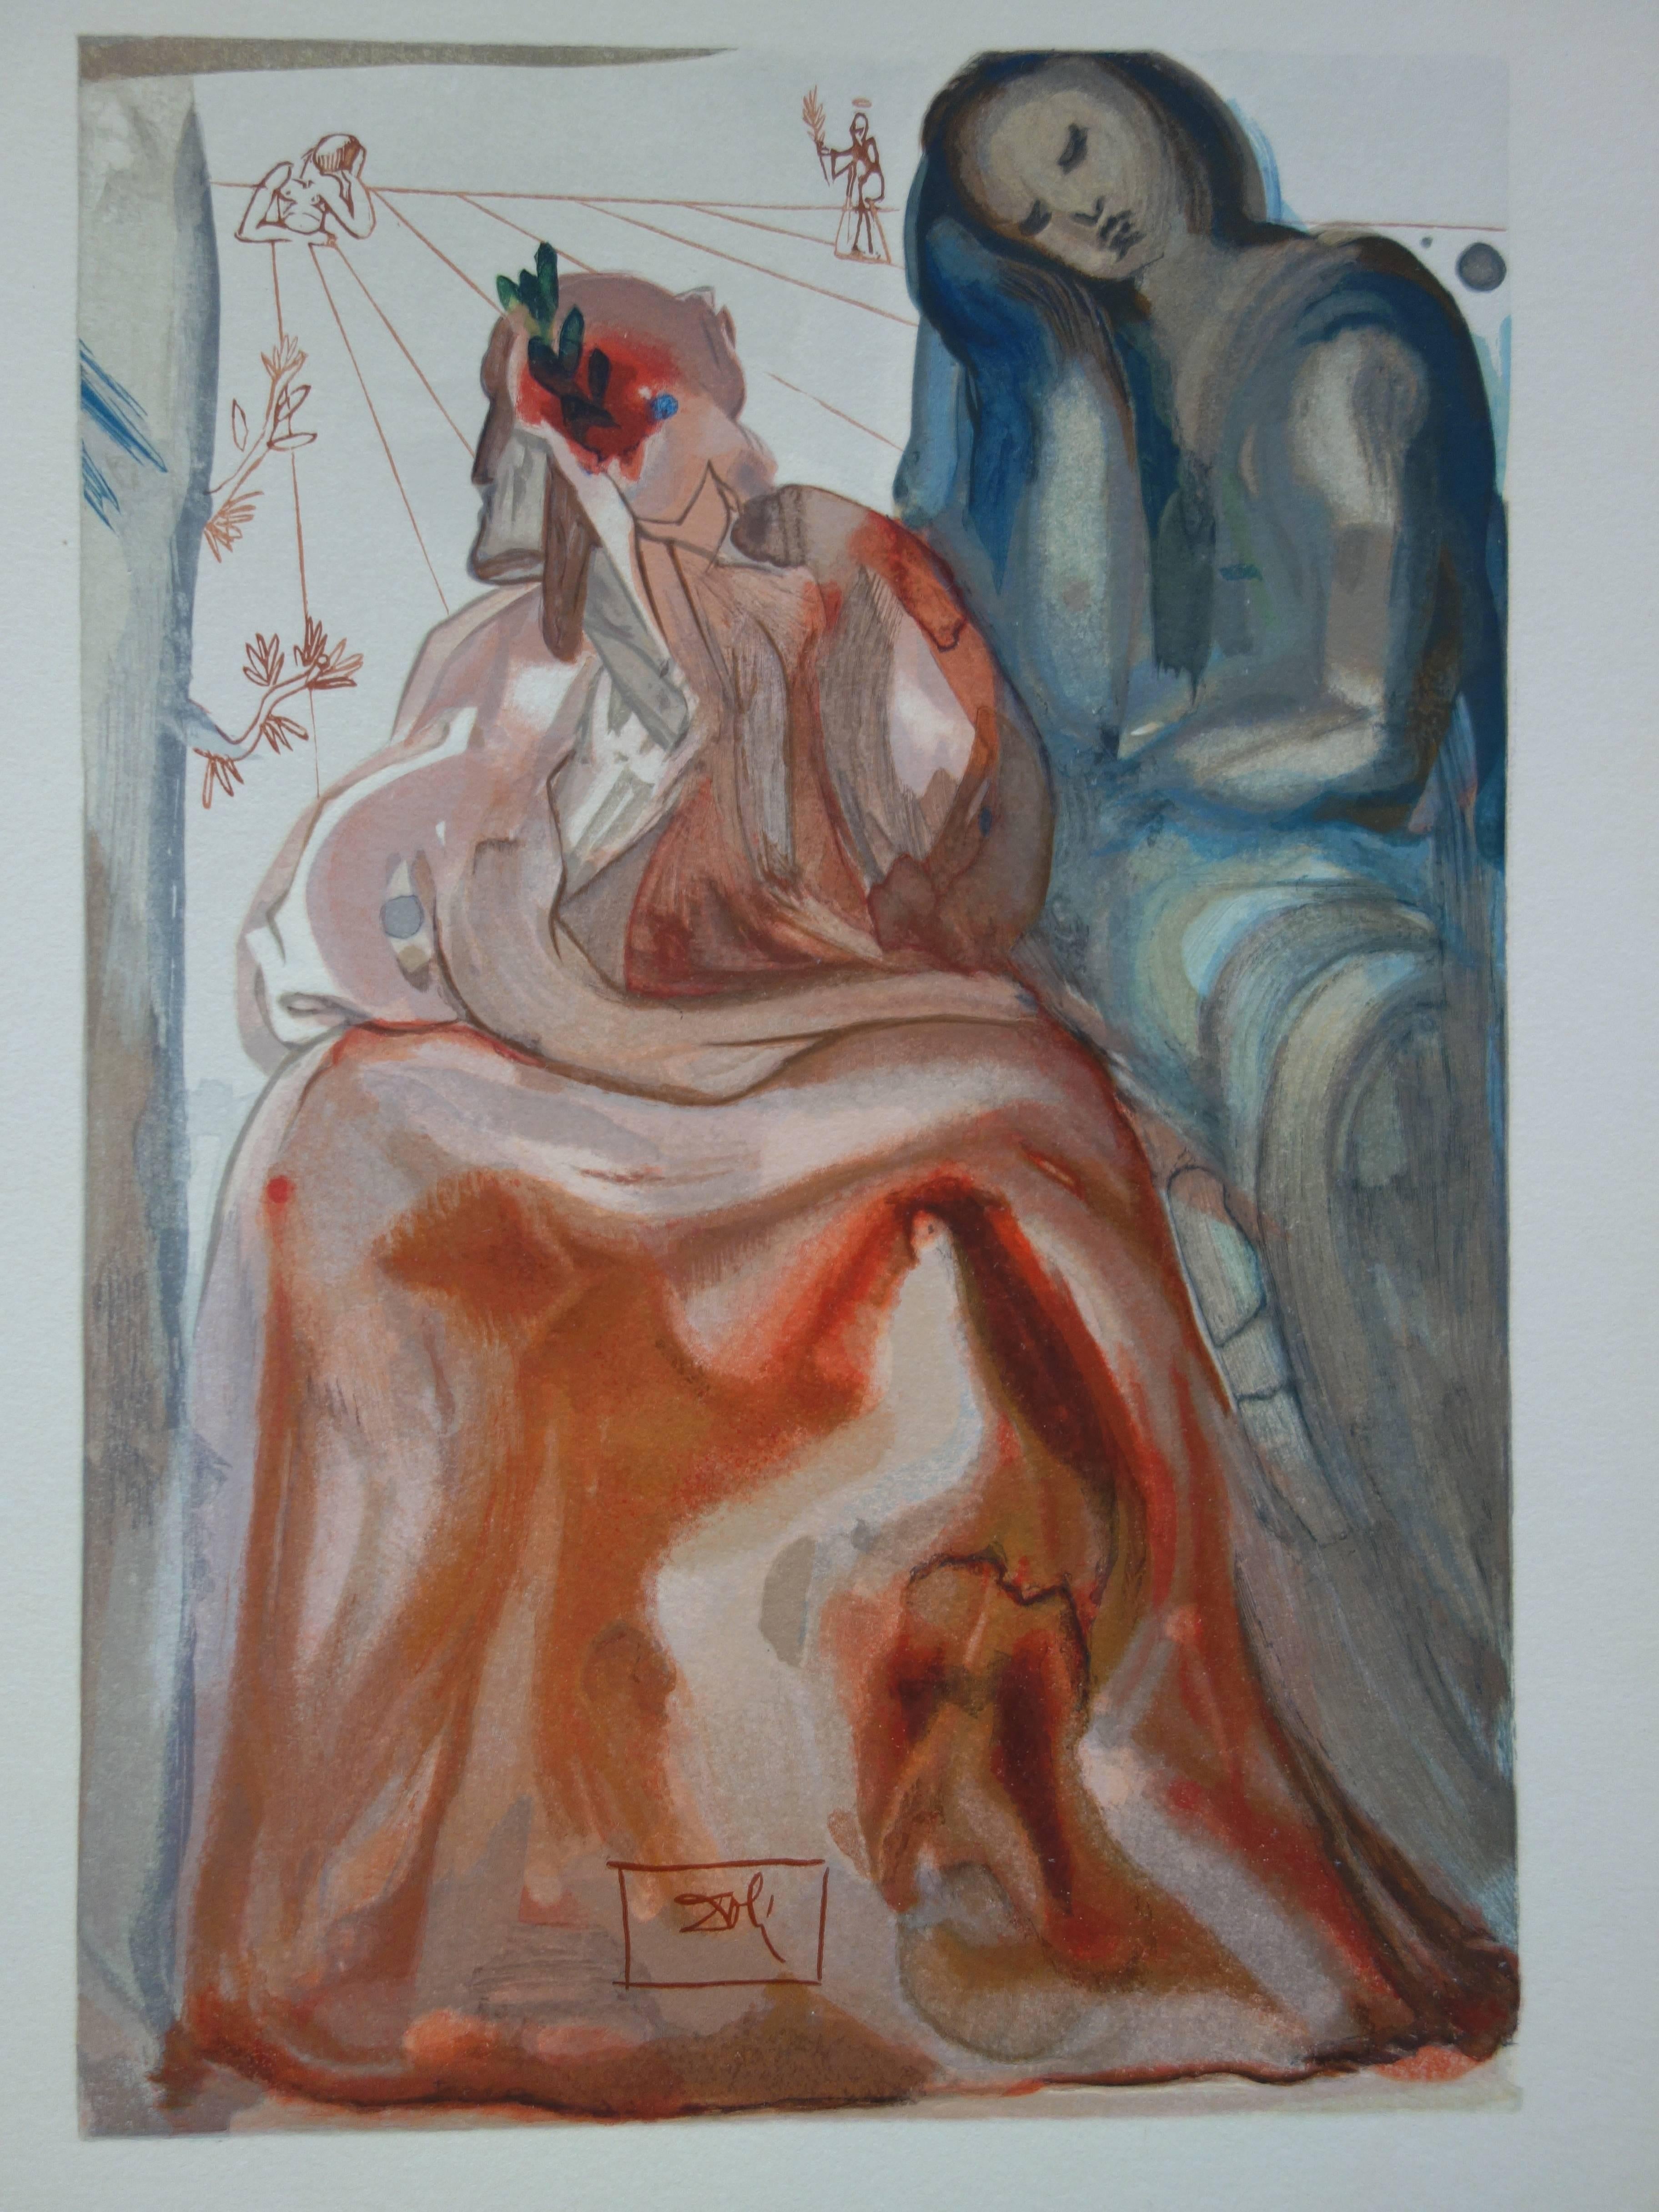 Purgatory 31 - Dante's Confession - Color woodcut - 1963 (Field p. 189) - Surrealist Print by Salvador Dalí